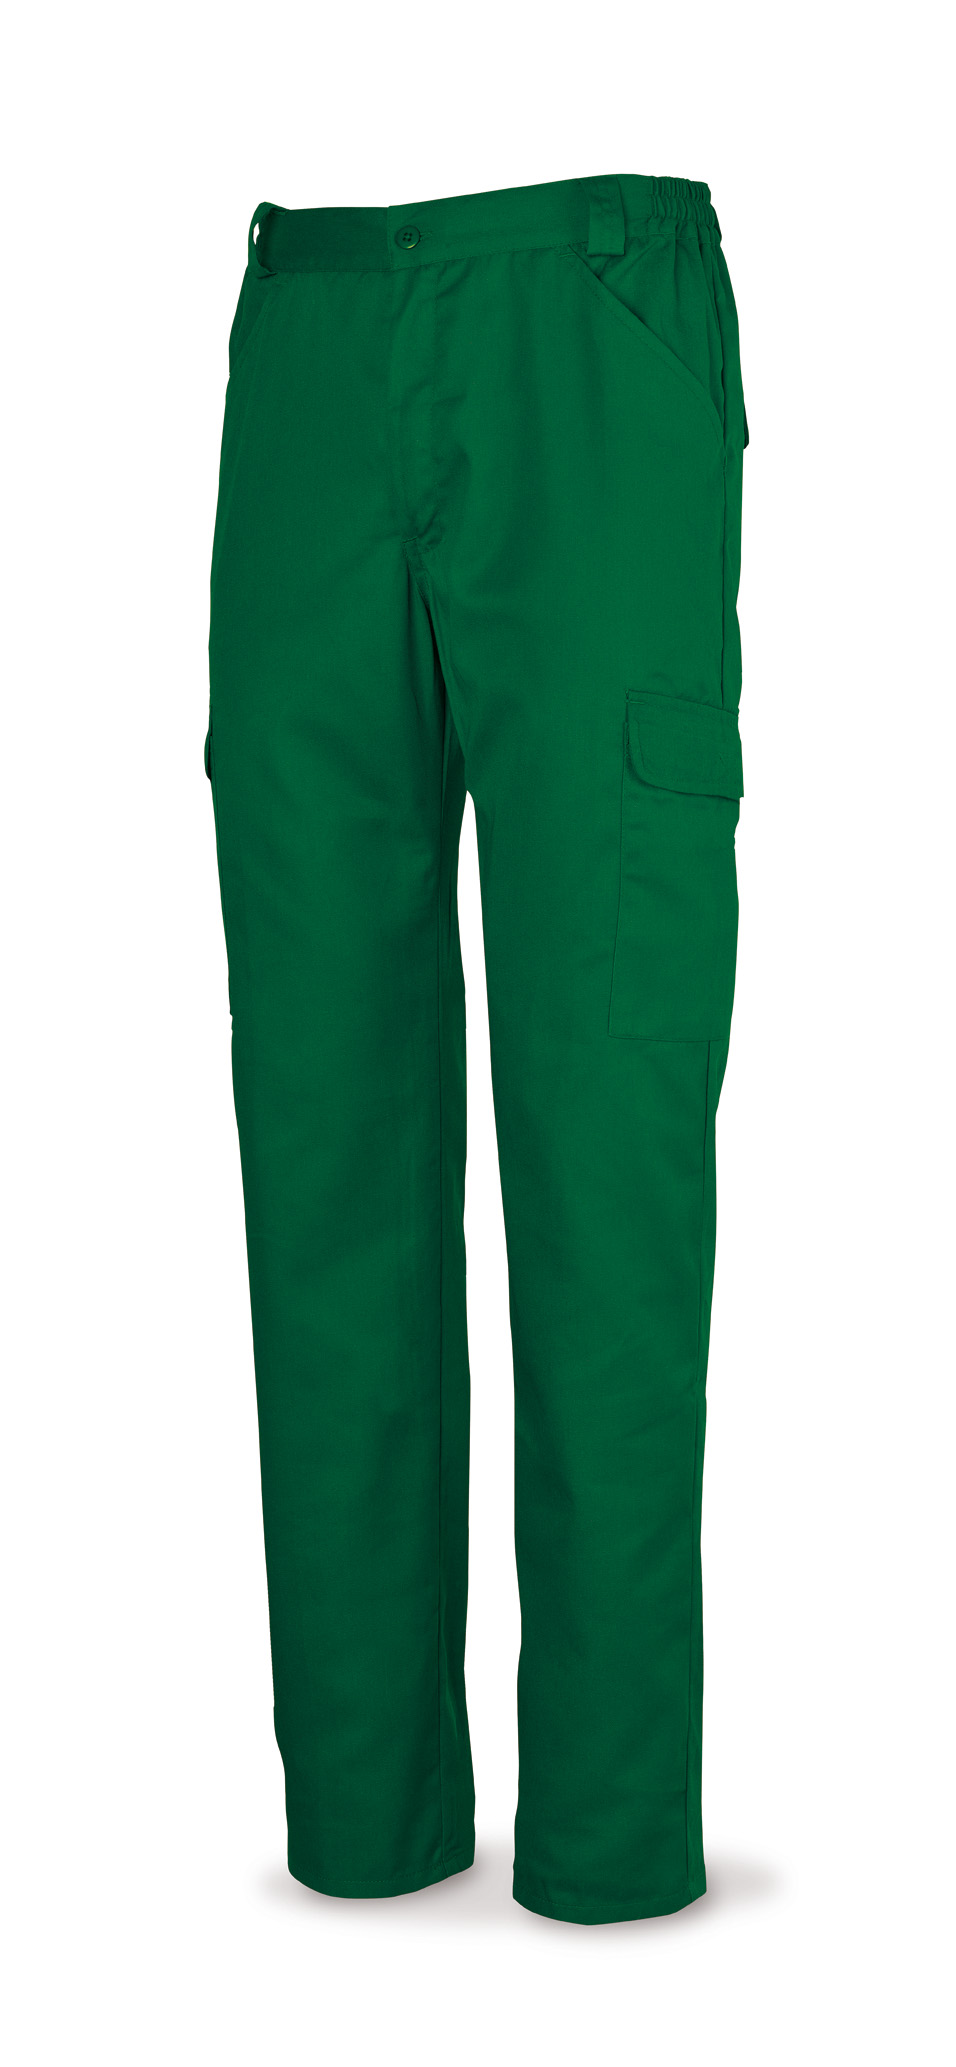 Pantalon tergal verde 38